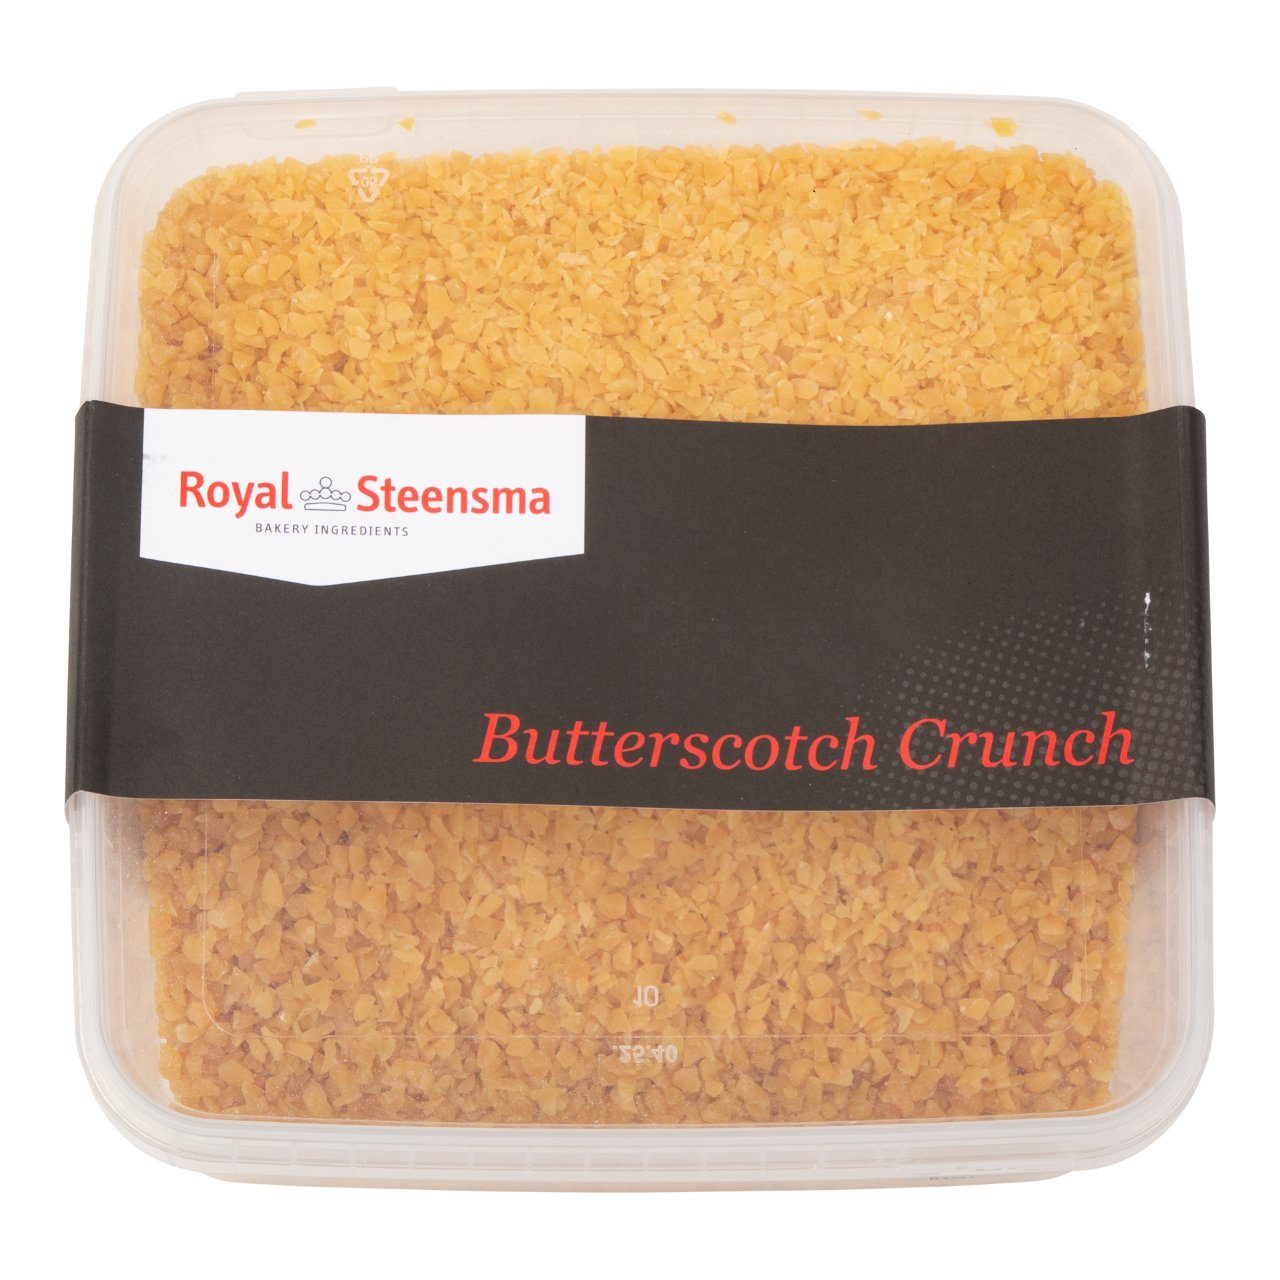 Butterscotch crunch